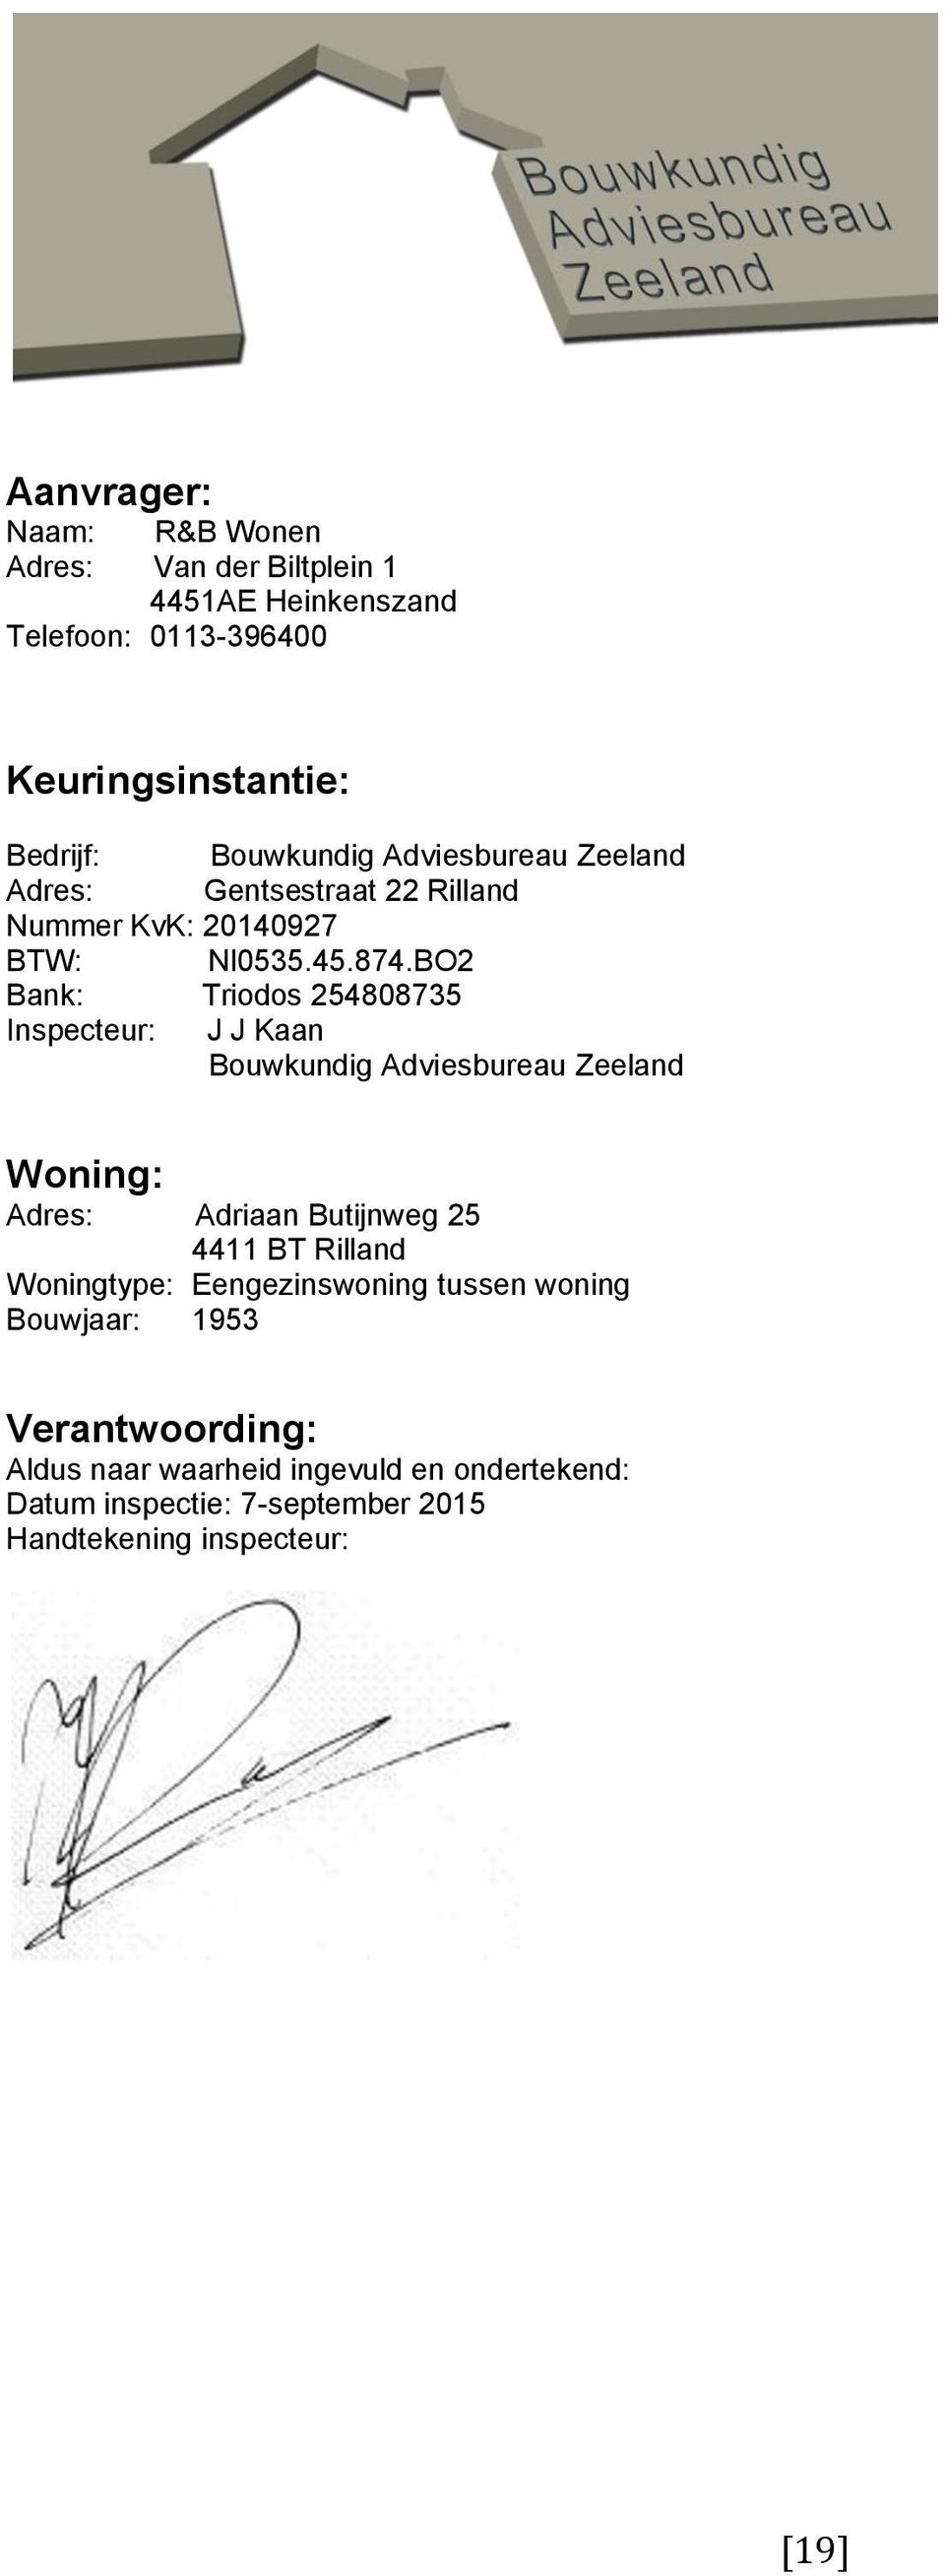 BO2 Bank: Triodos 254808735 Inspecteur: J J Kaan Bouwkundig Adviesbureau Zeeland Woning: Adres: Adriaan Butijnweg 25 4411 BT Rilland